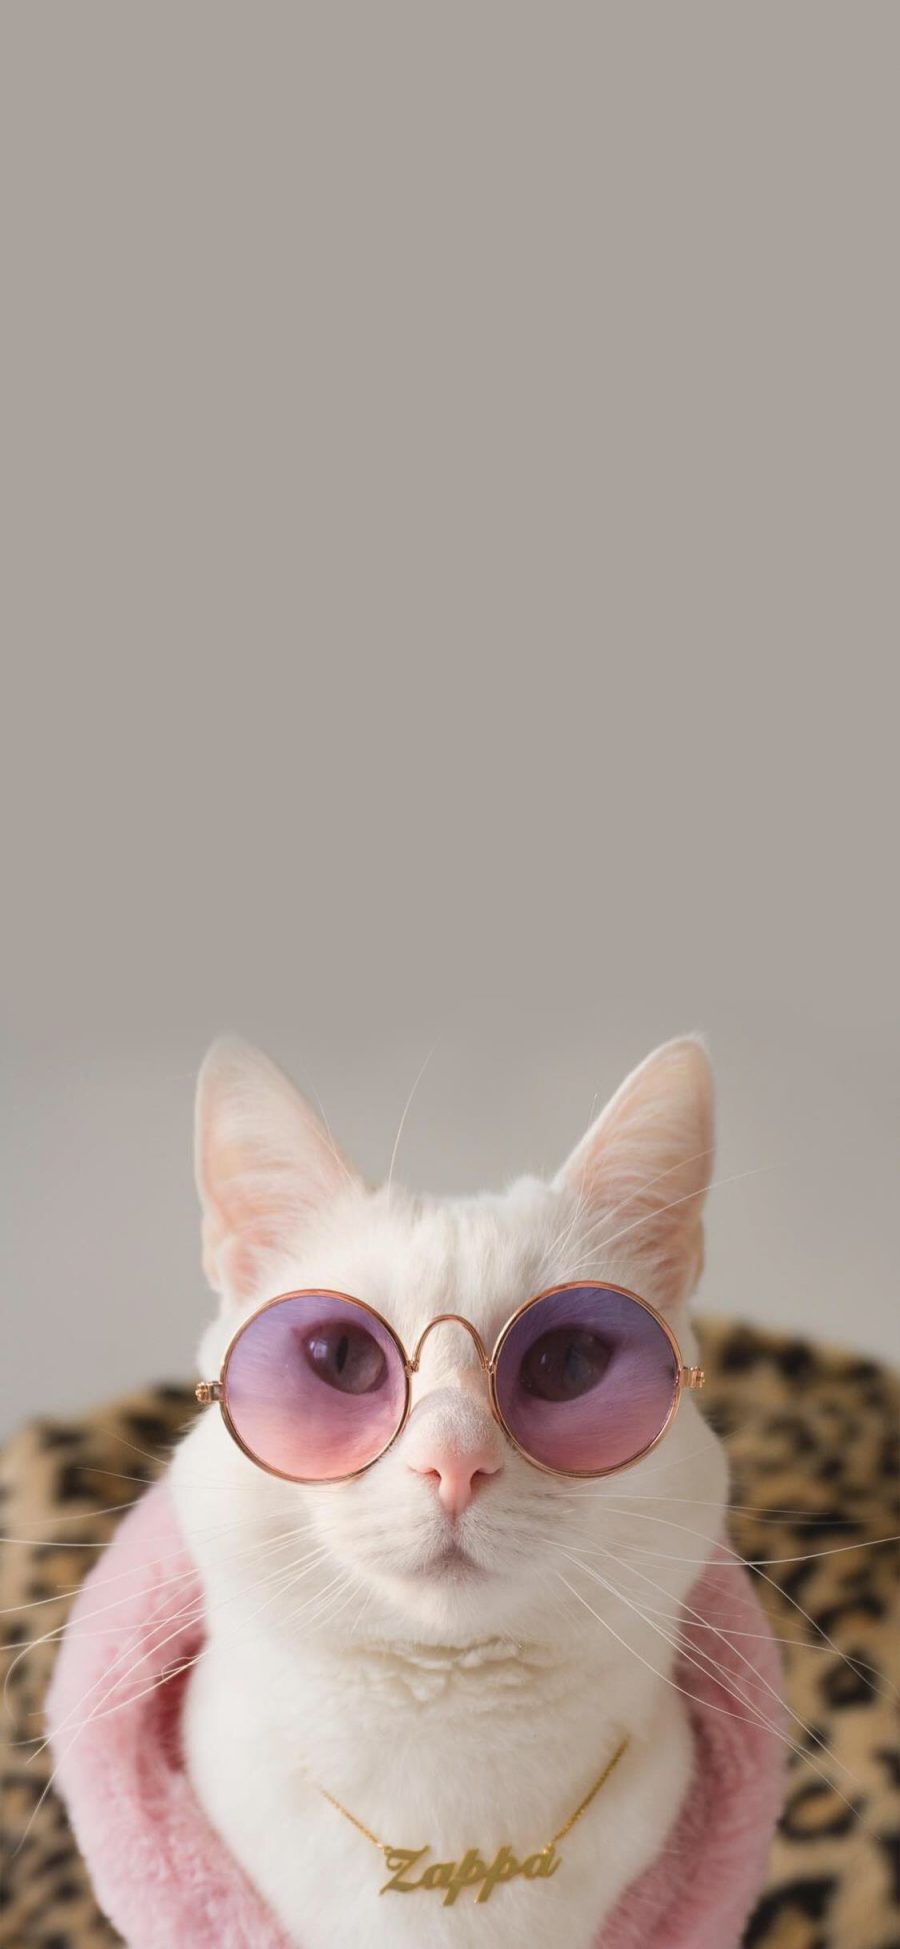 [2436×1125]猫咪 时尚 萌 宠物 喵星人 品牌 豹纹 苹果手机壁纸图片